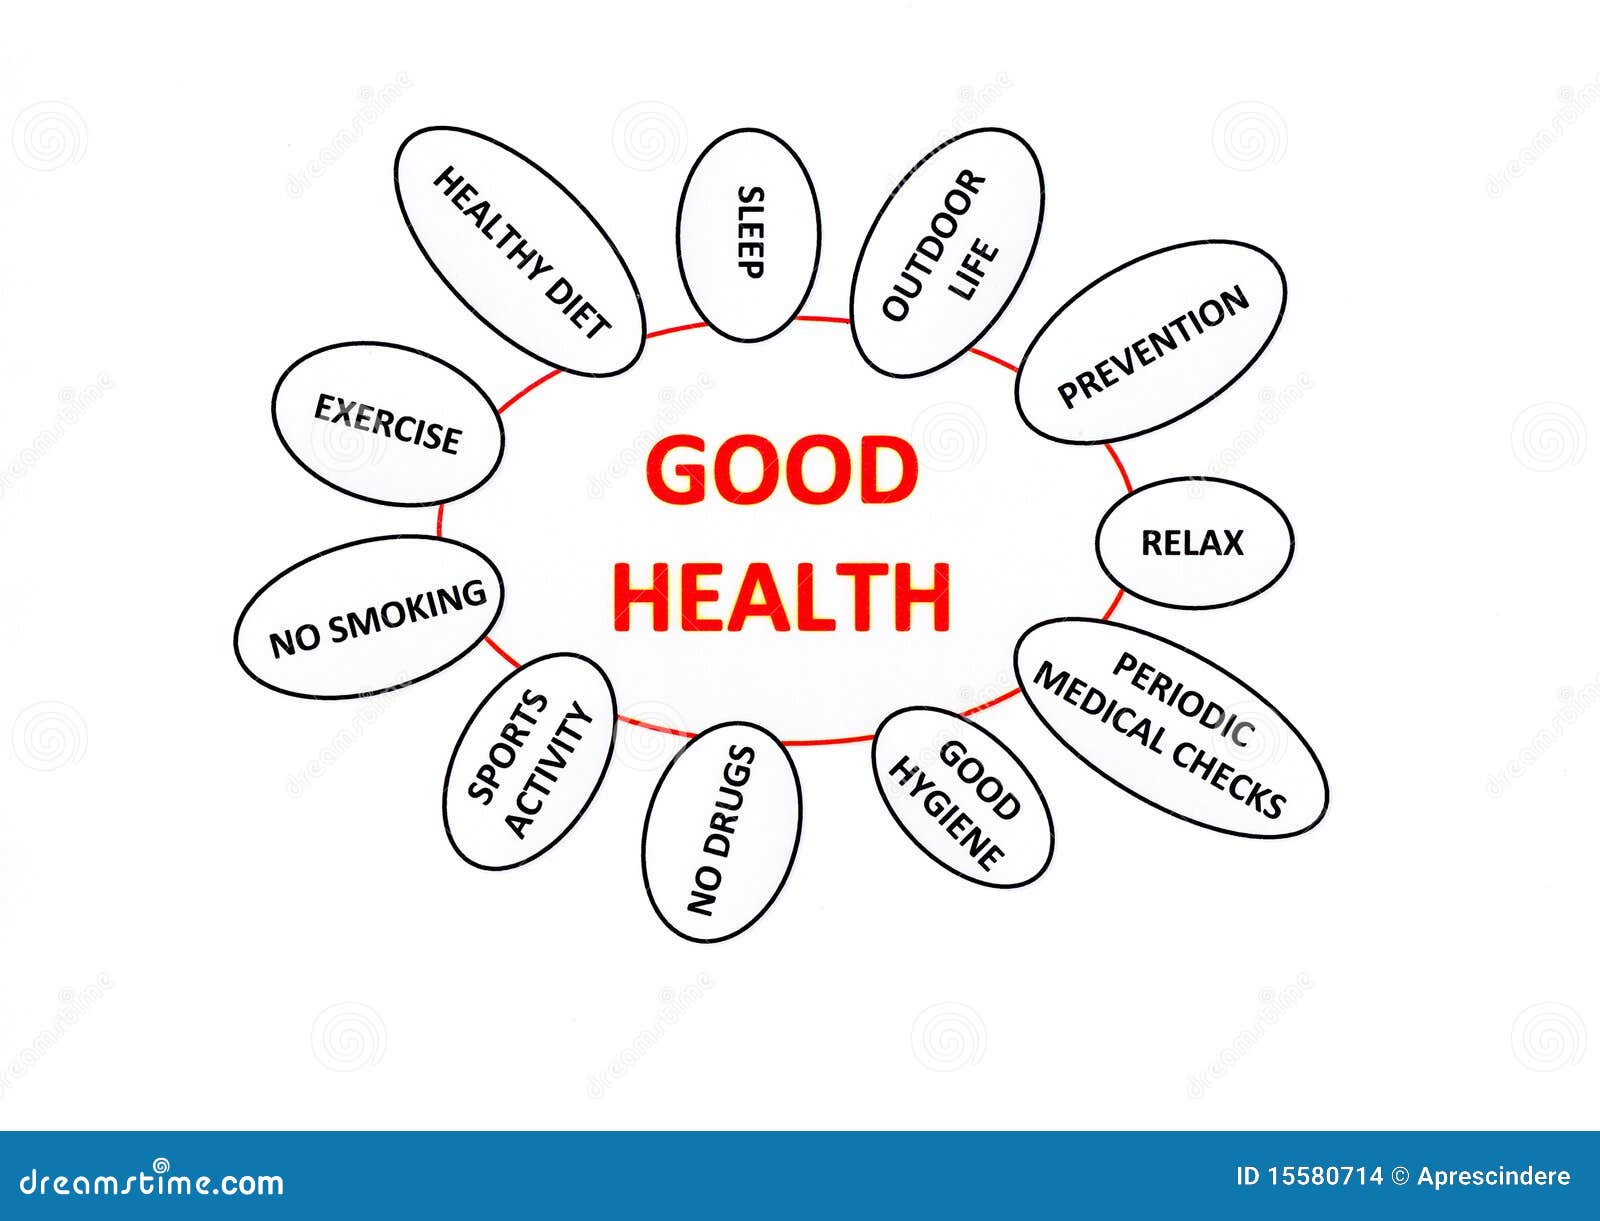 Argumentative health topics